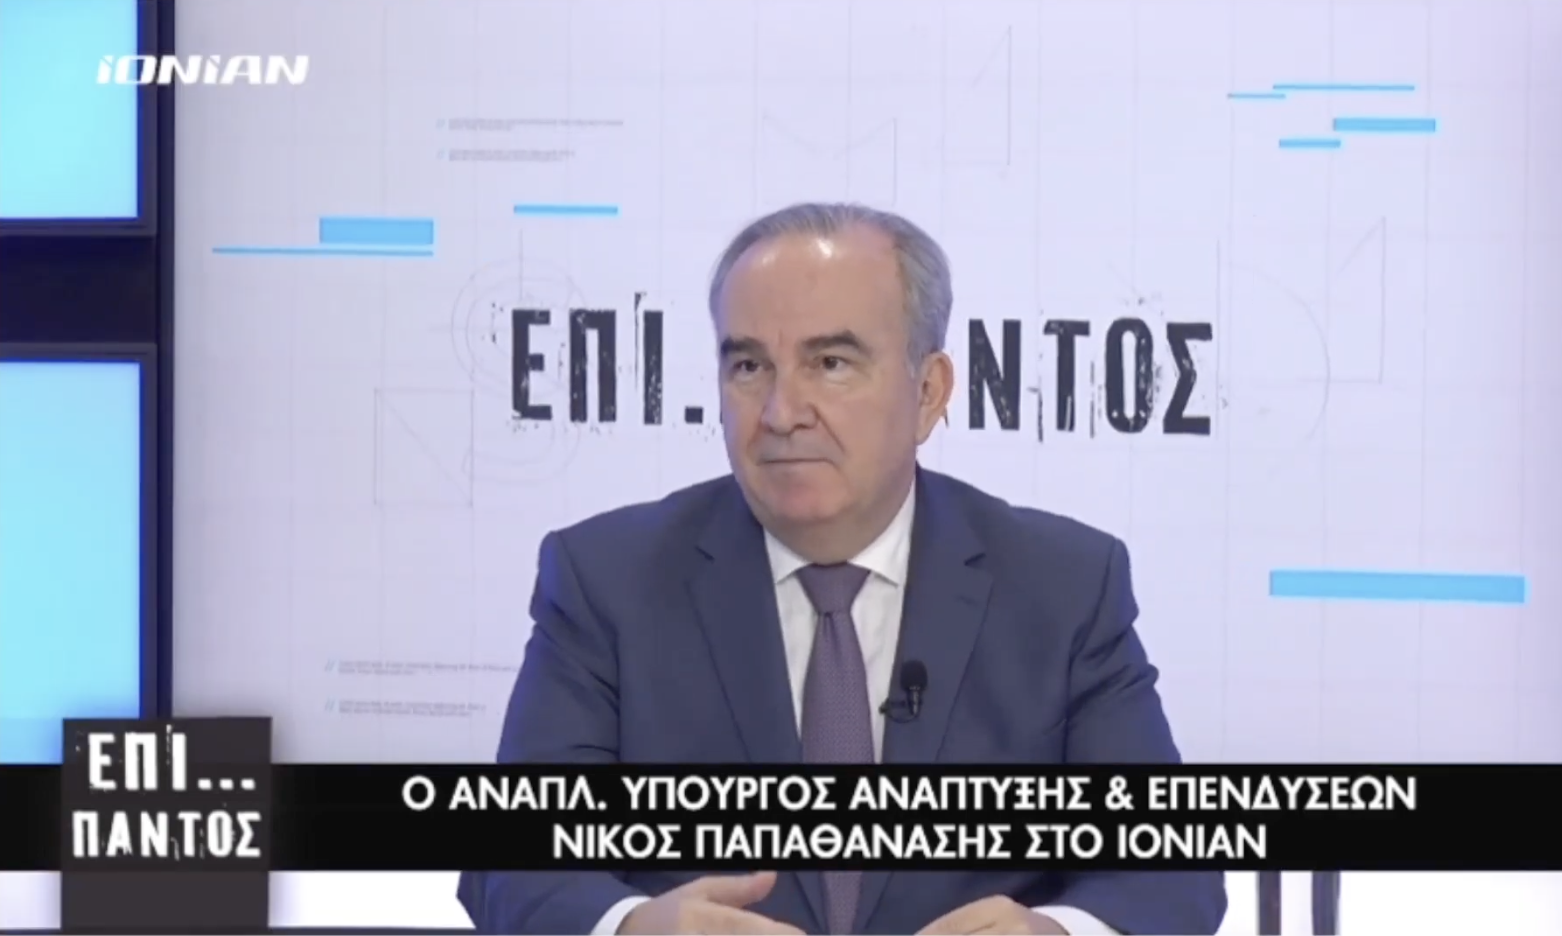 Ο Νίκος Παπαθανάσης, Αναπληρωτής Υπουργός Ανάπτυξης & Επενδύσεων στο IONIAN TV